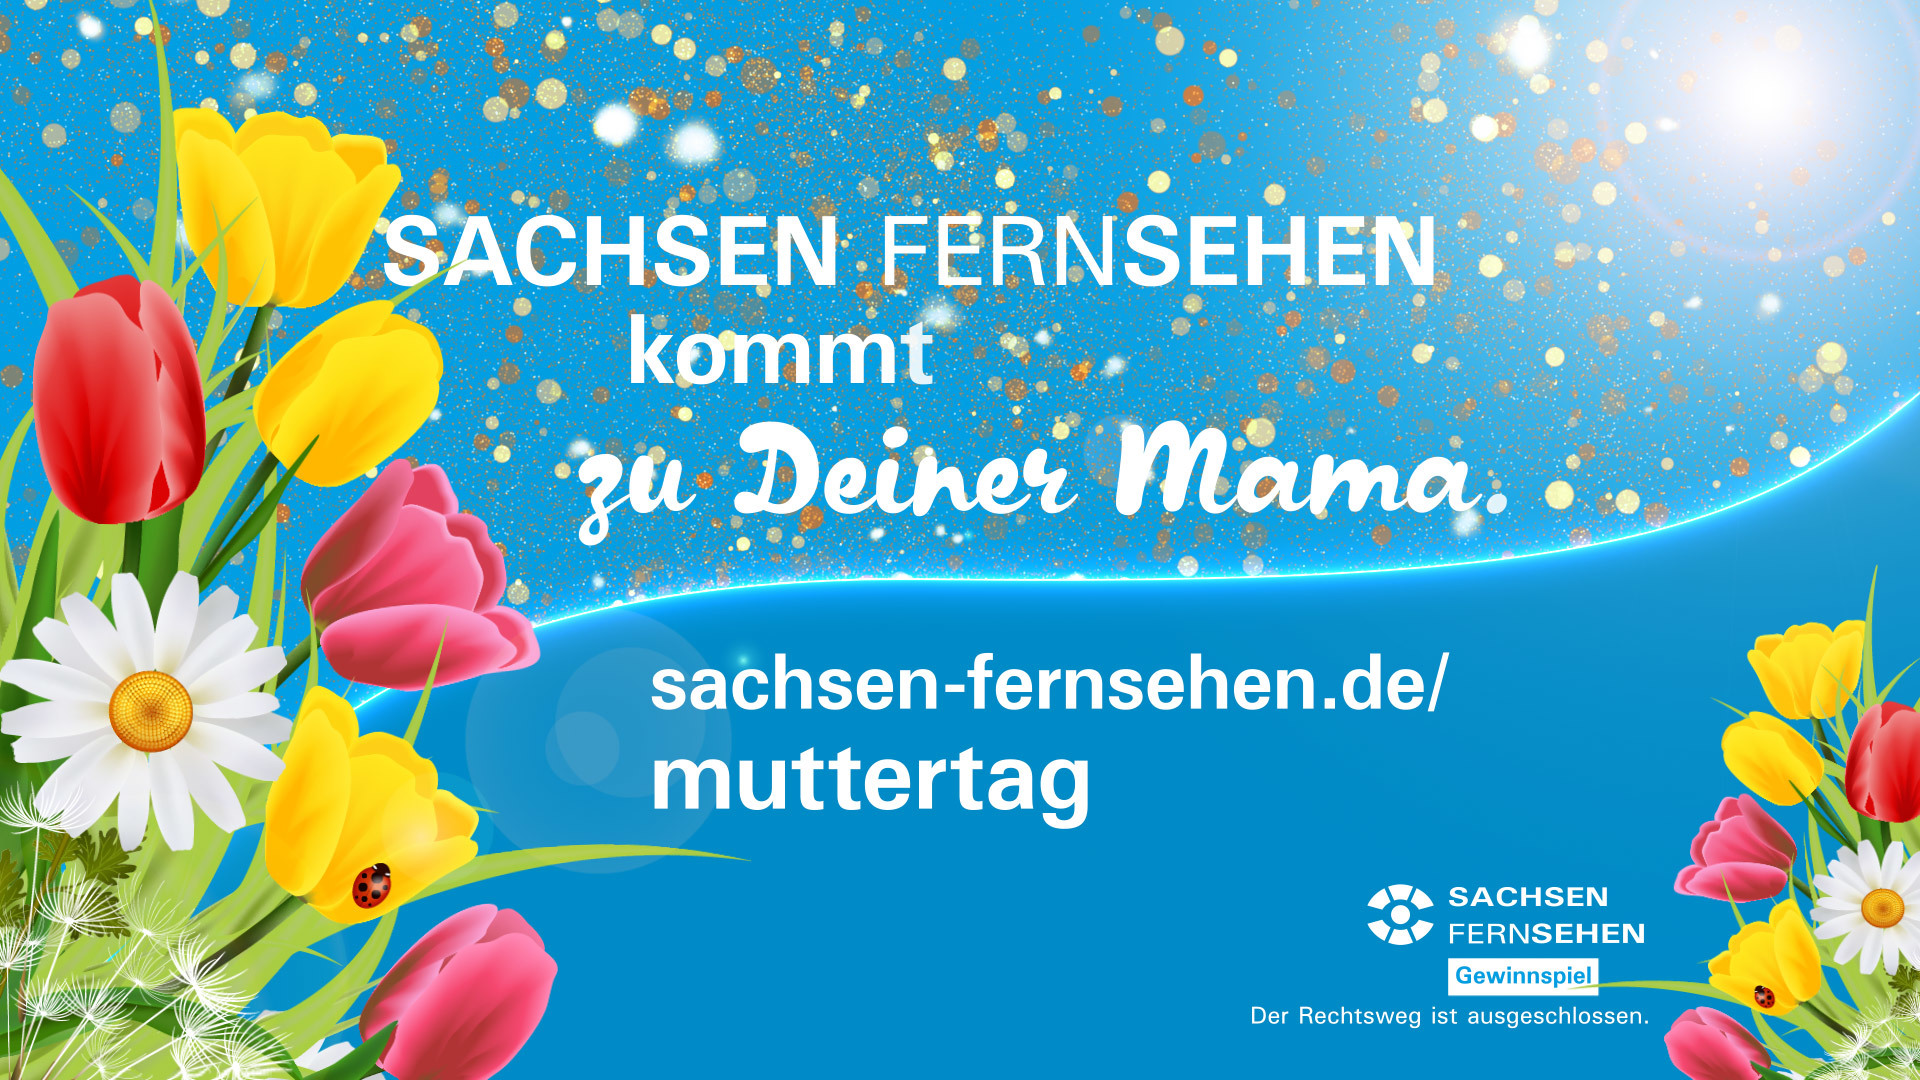 Muttertags-Aktion bei SACHSEN FERNSEHEN www.sachsen-fernsehen.de/muttertag